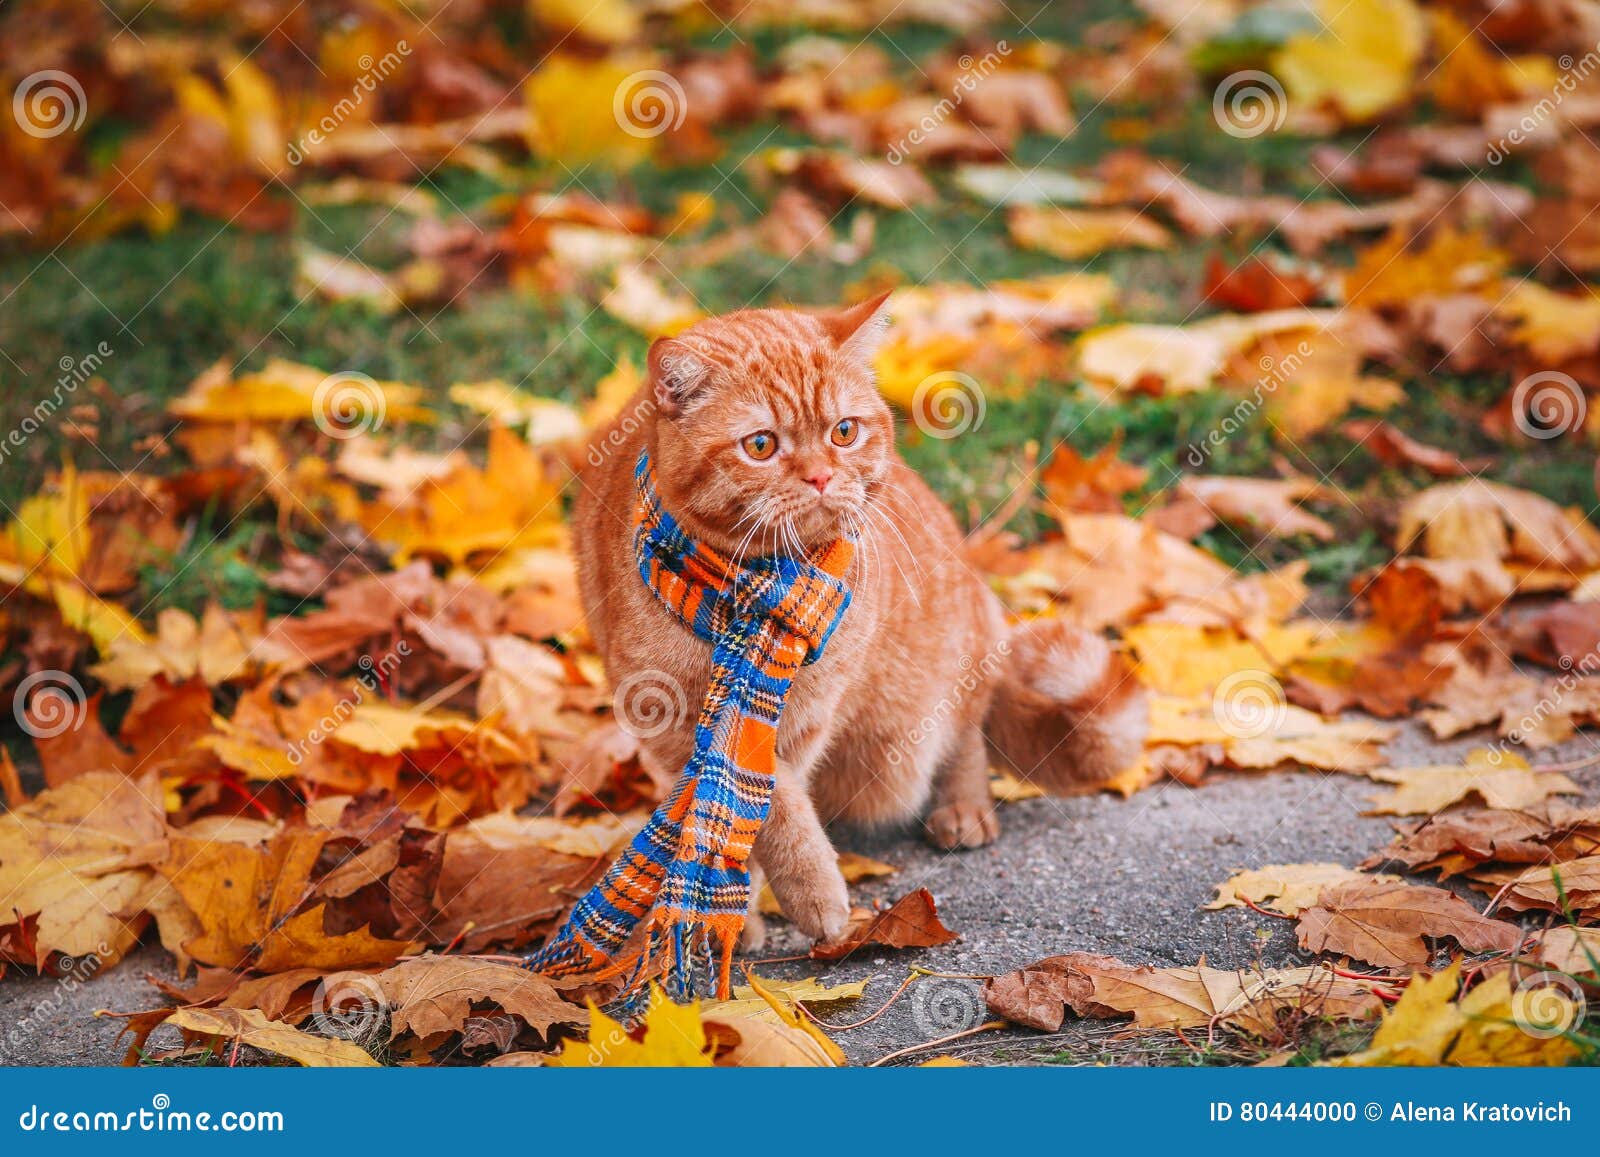 Рыжий котик в шарфике осенью